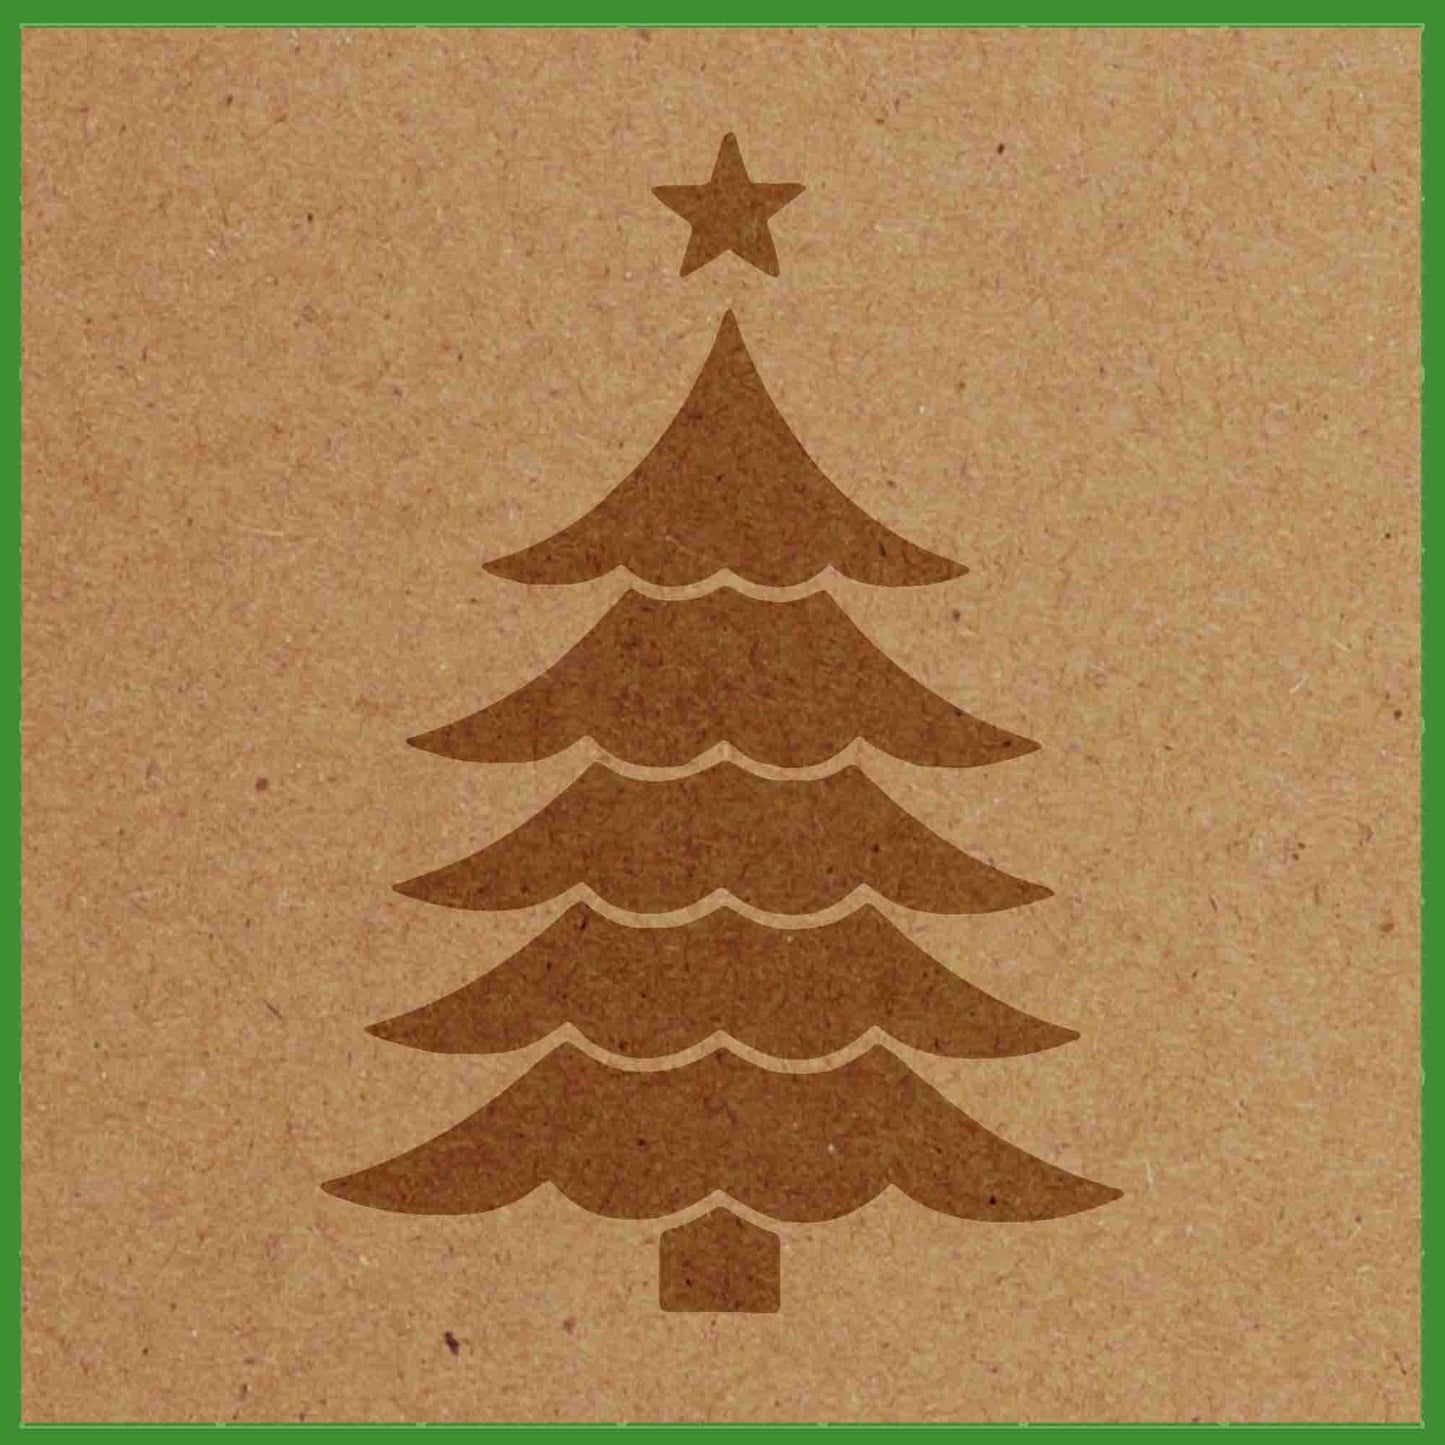 CHRISTMAS TREE STENCIL - LAZY STENCILS